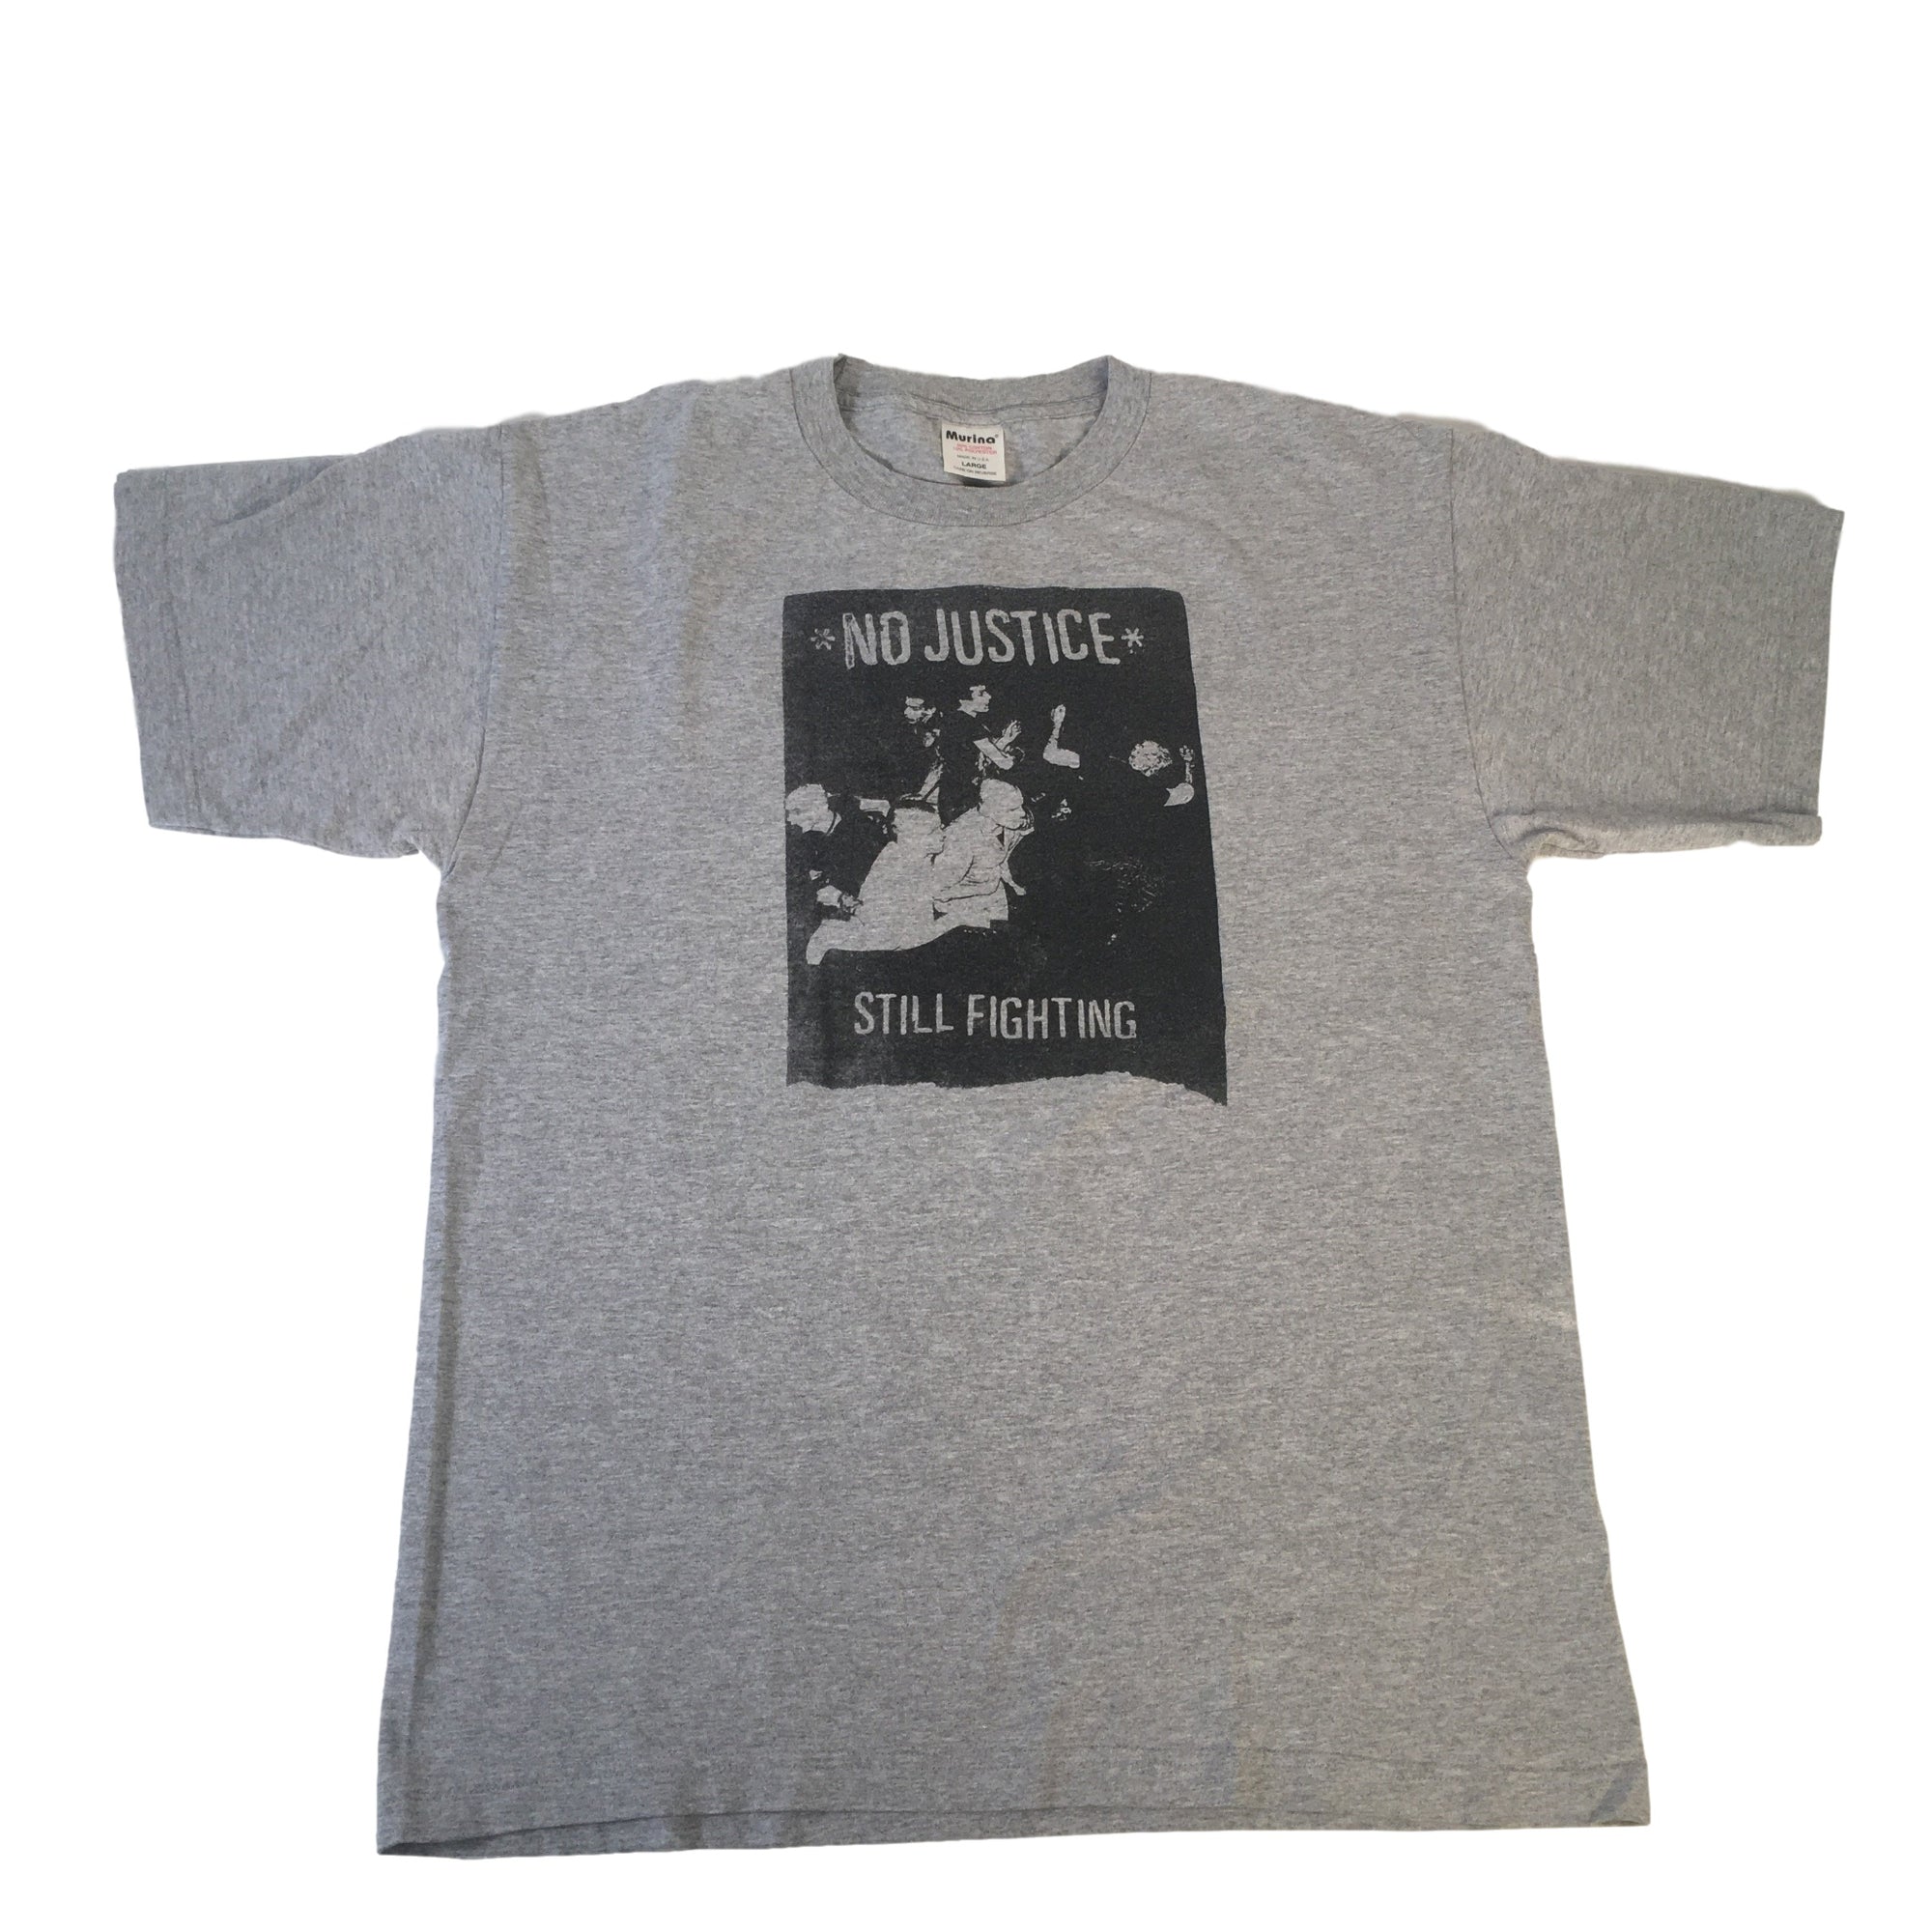 Vintage No Justice "Still Fighting" T-Shirt - jointcustodydc